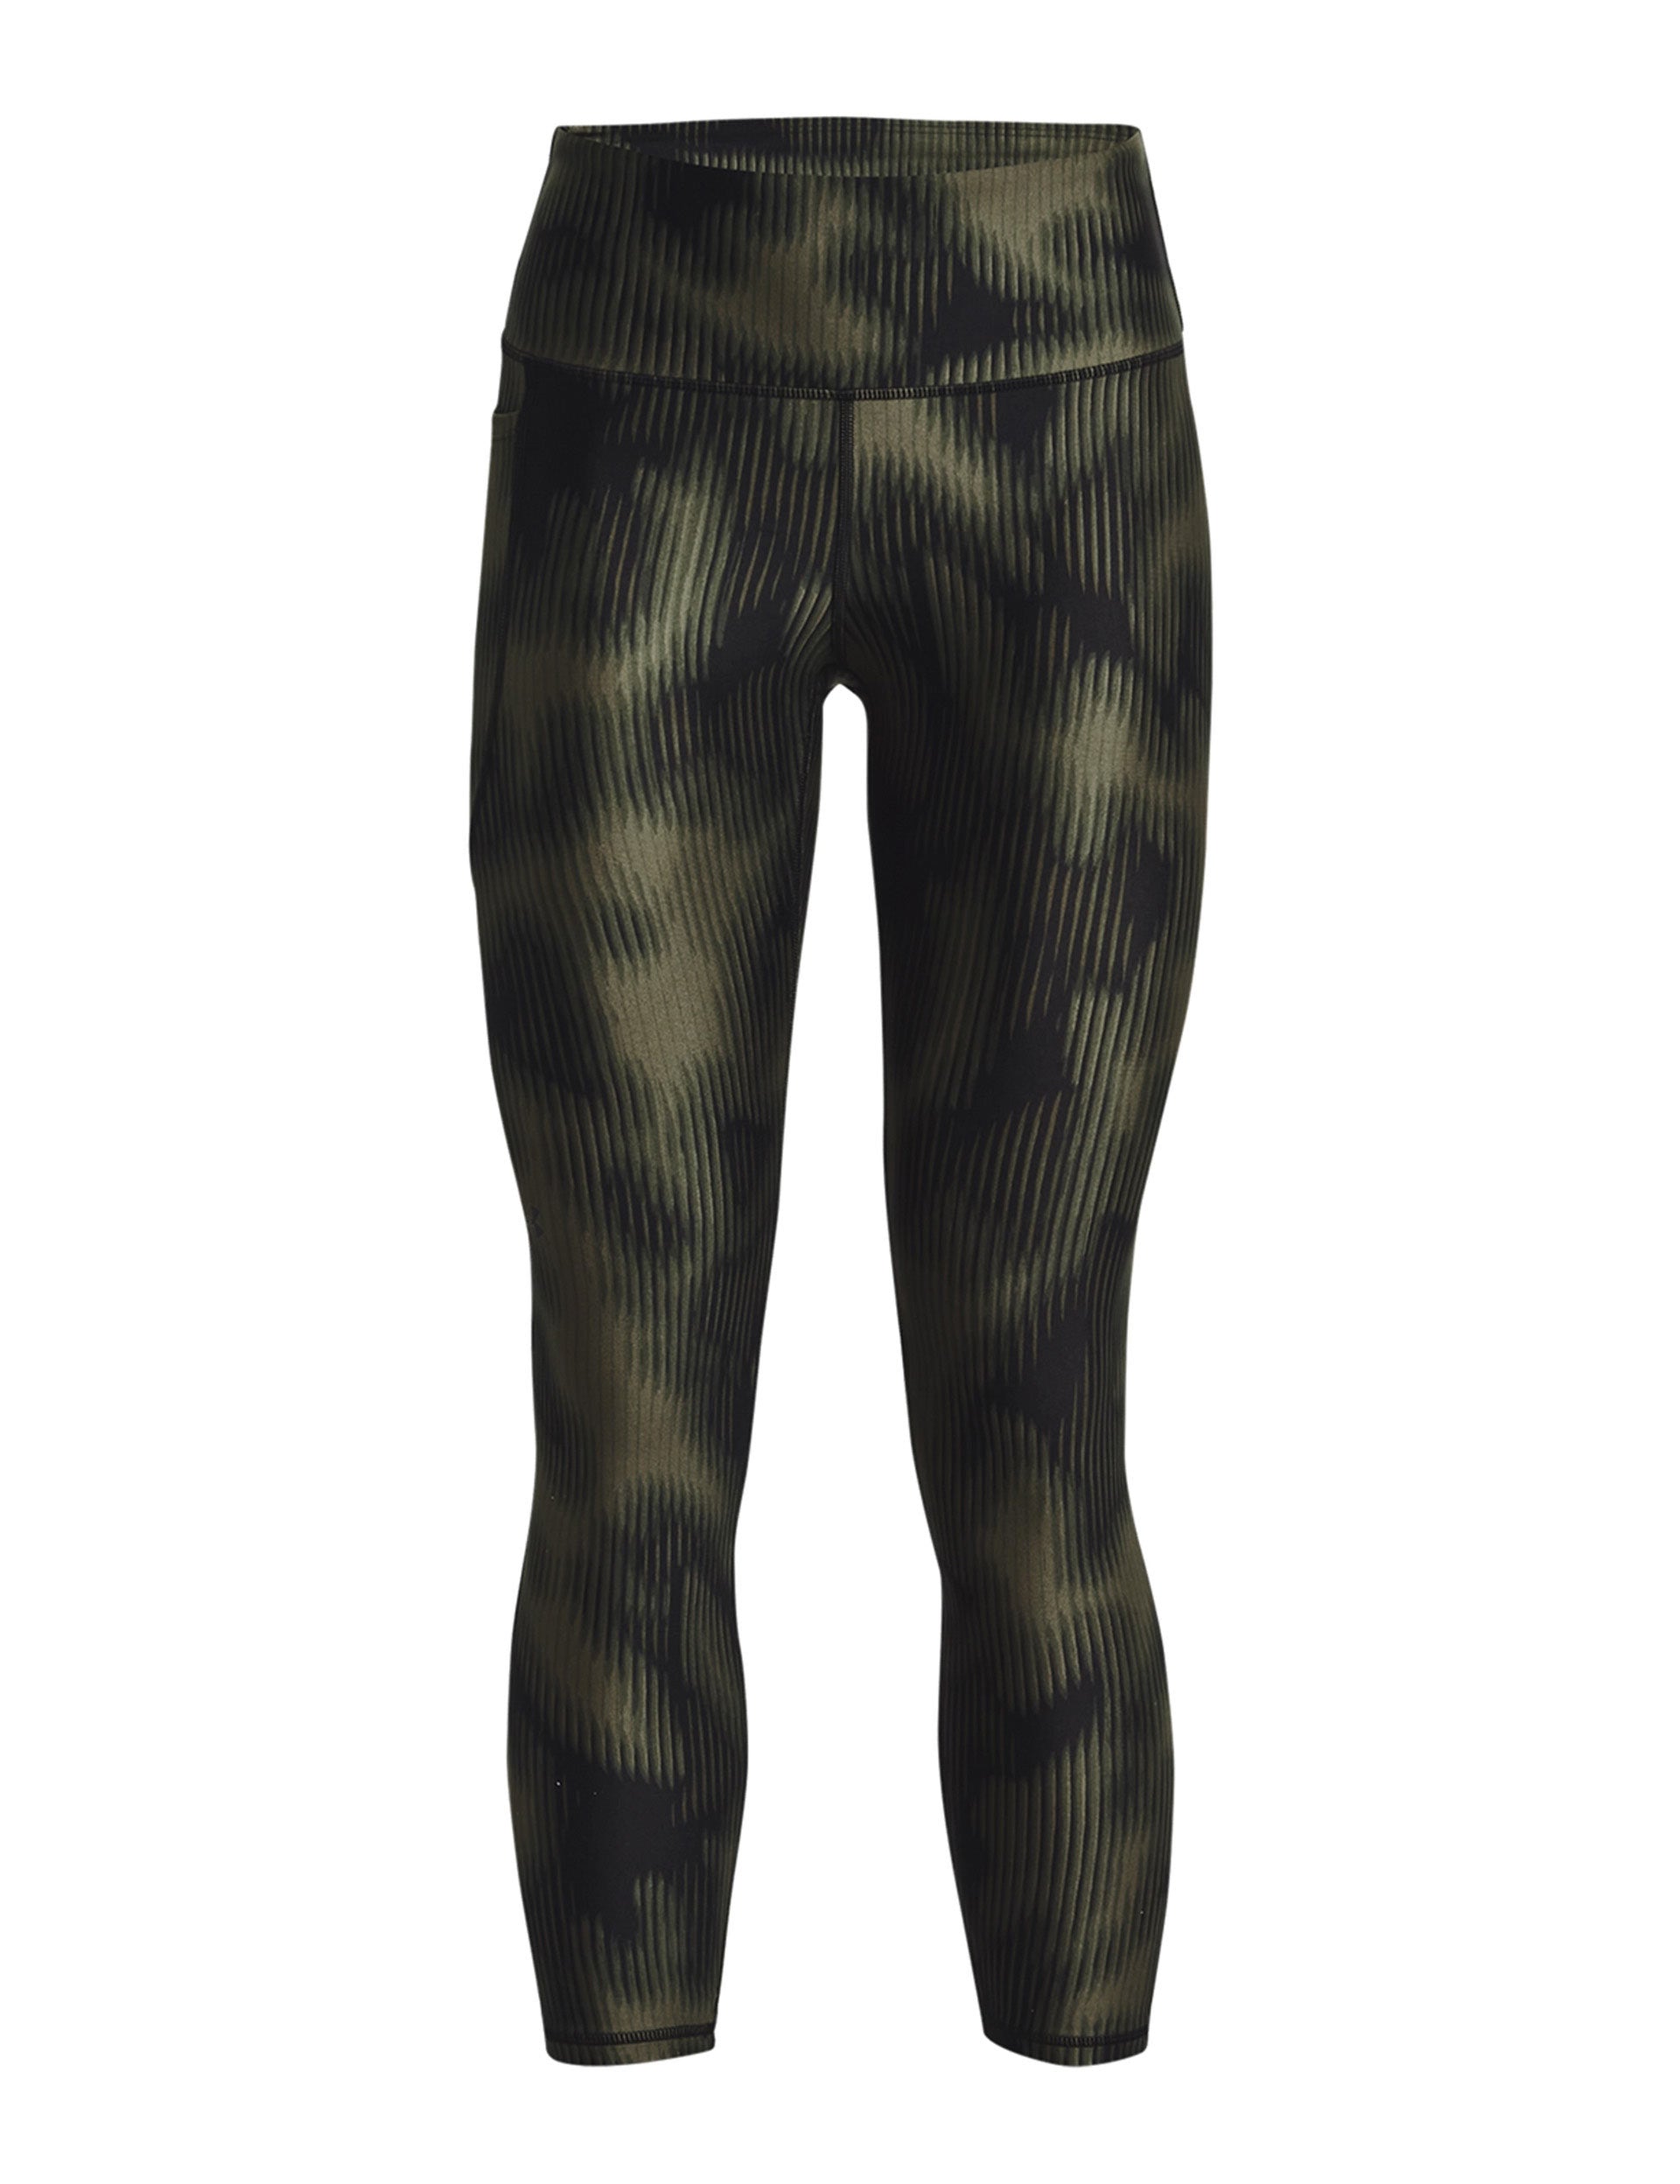 leggings Under Armour HeatGear No-Slip Waistband Full-Lenght -  001/Black/White - women´s 